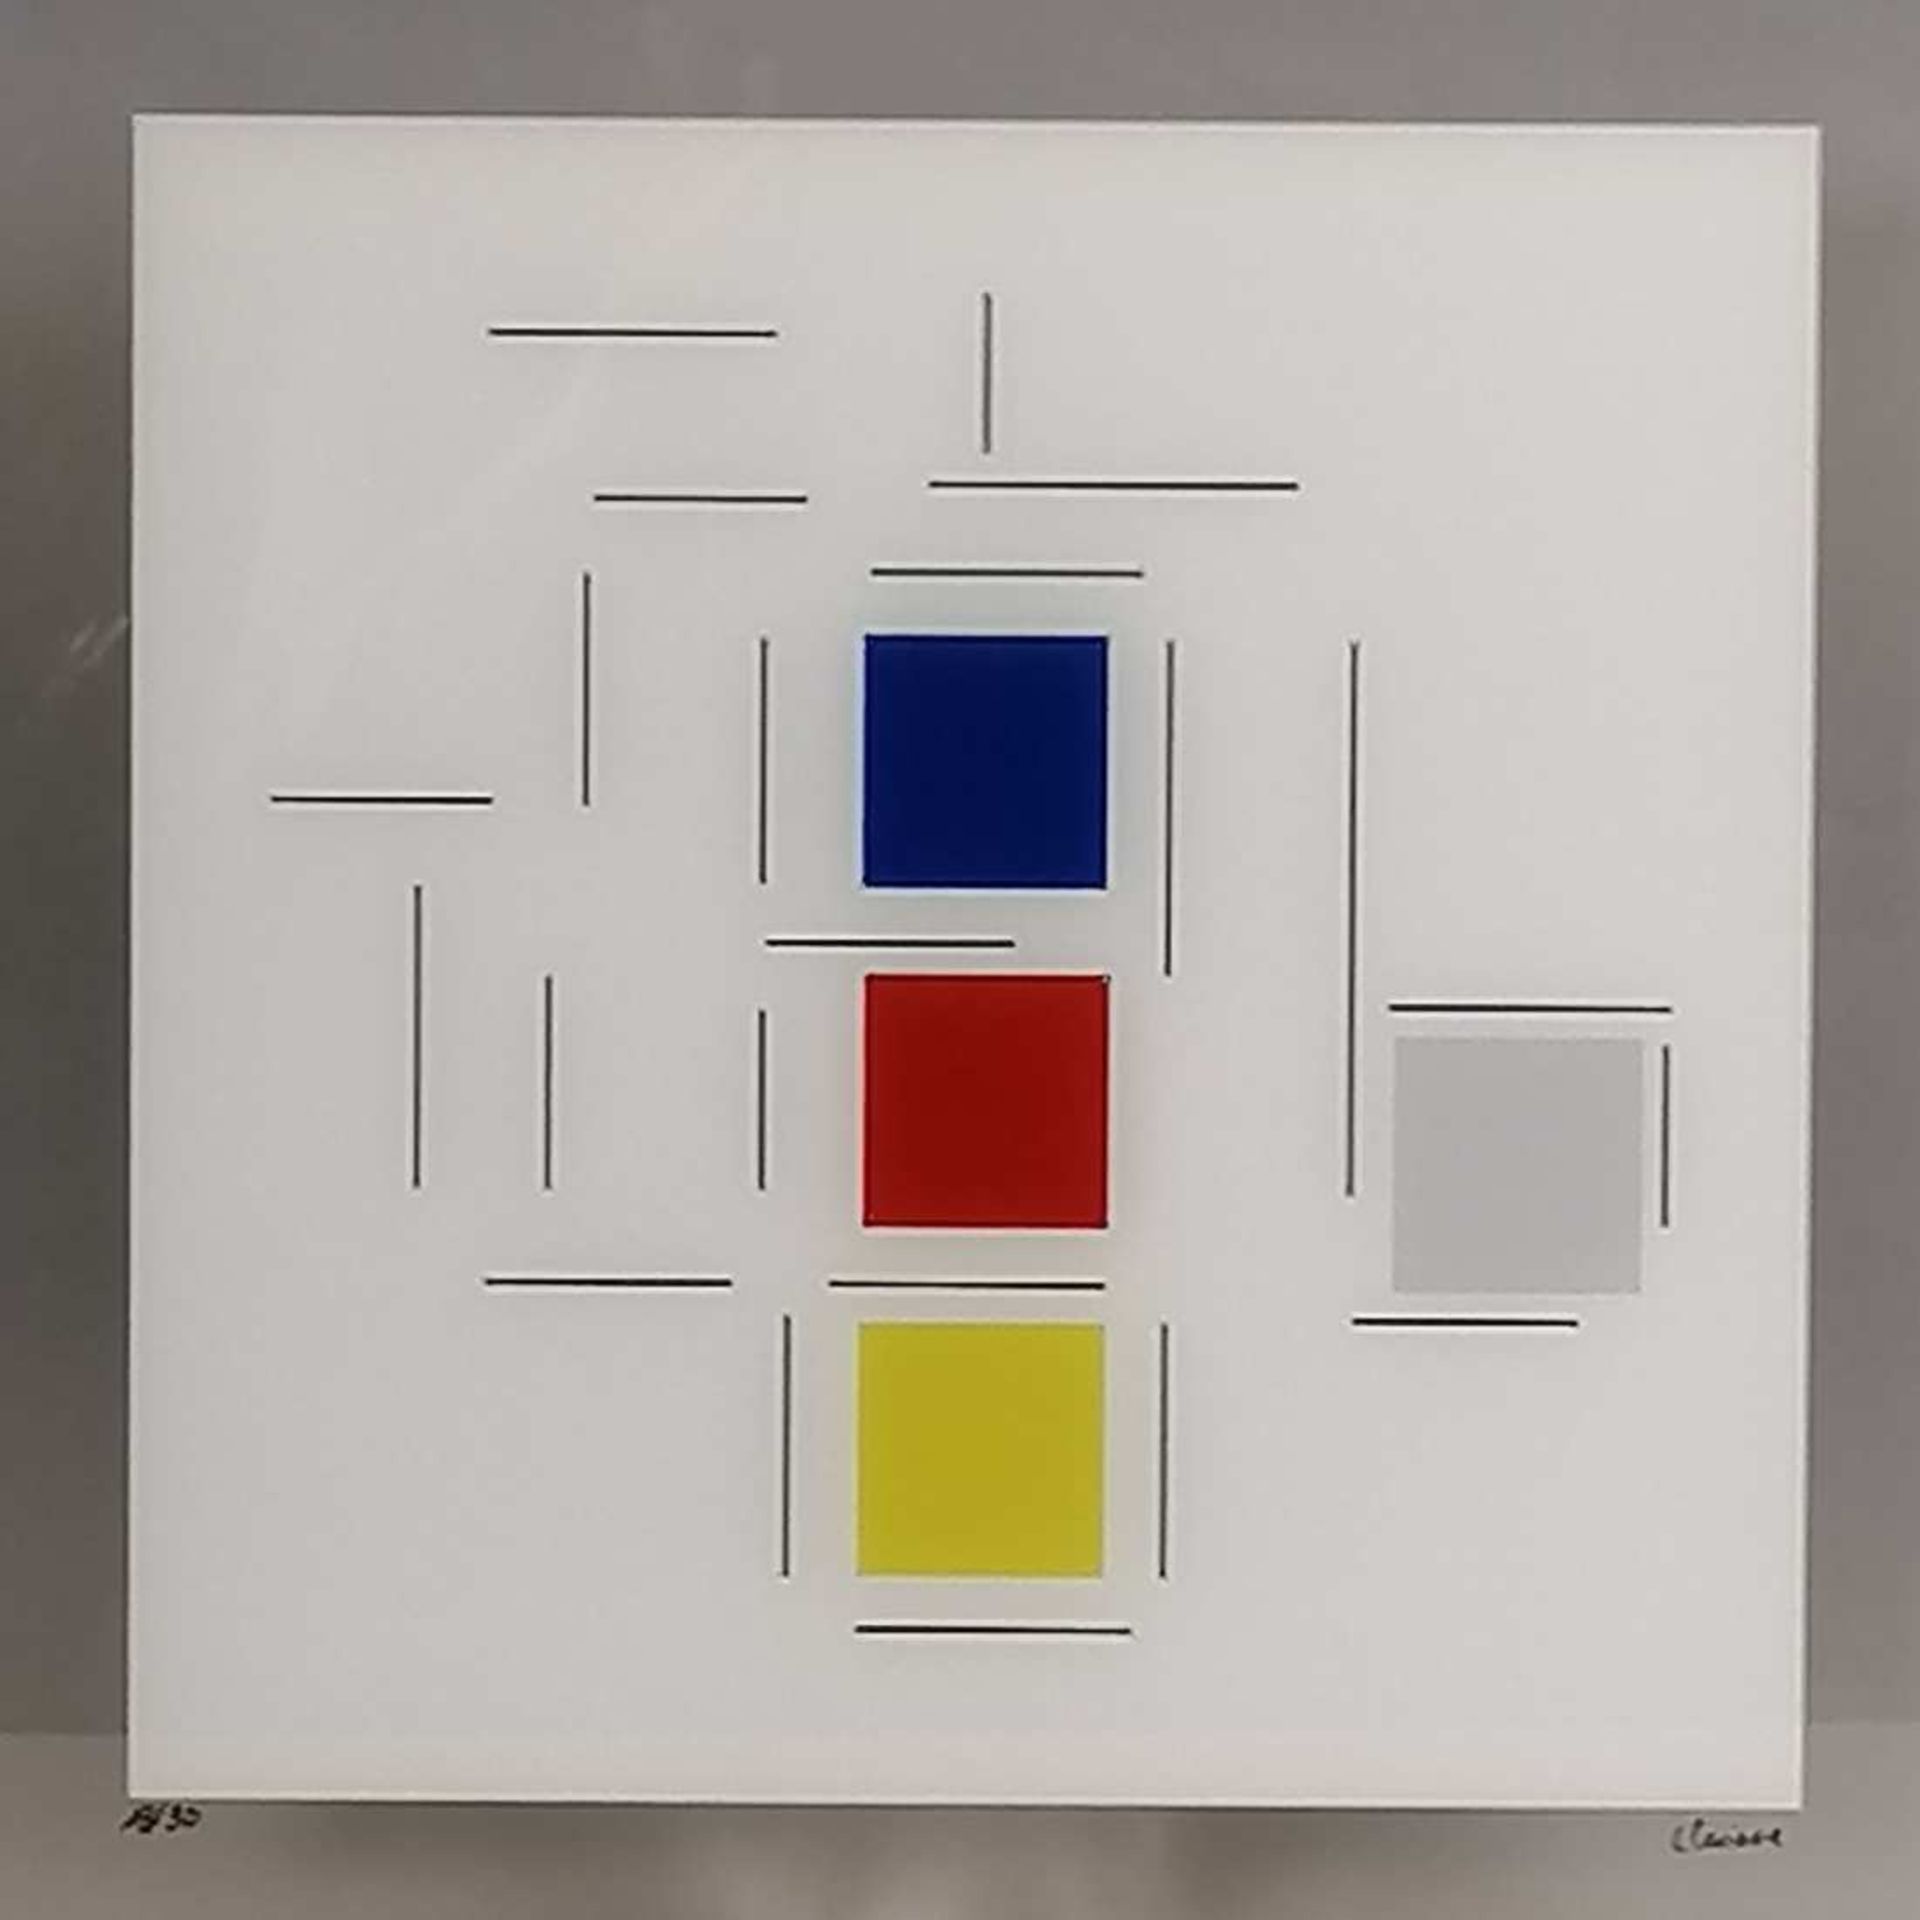 CLAISSE Geneviève (1935-2018). Cinq carreaux rectangle bleus 50 x50 cm. Socle plexiglas. Numéroté